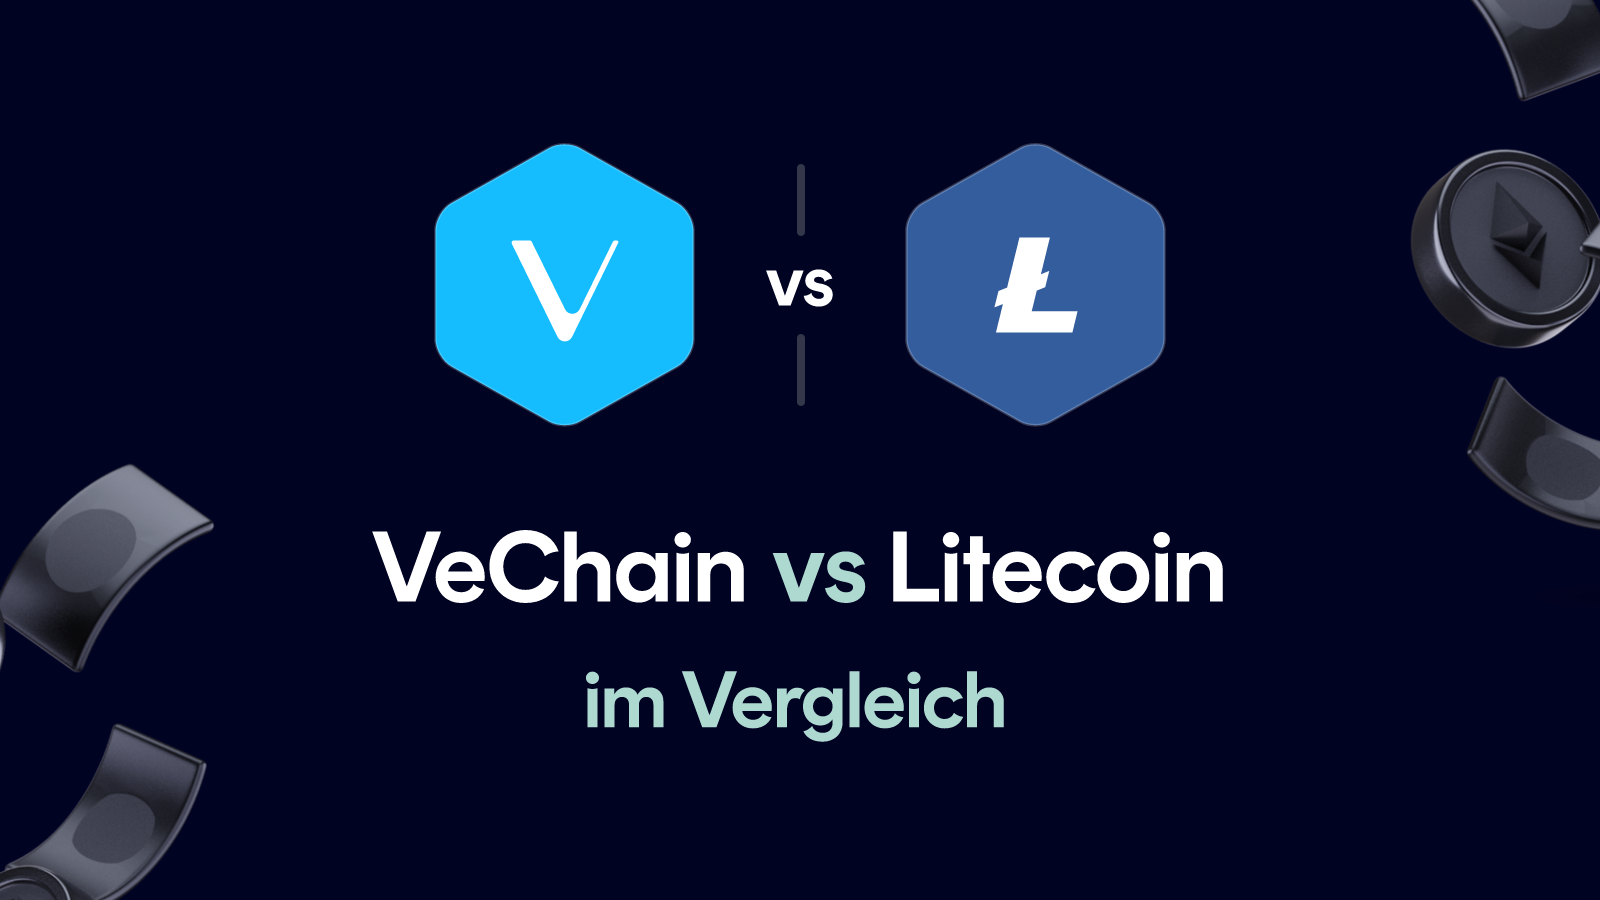 VeChain vs Litecoin